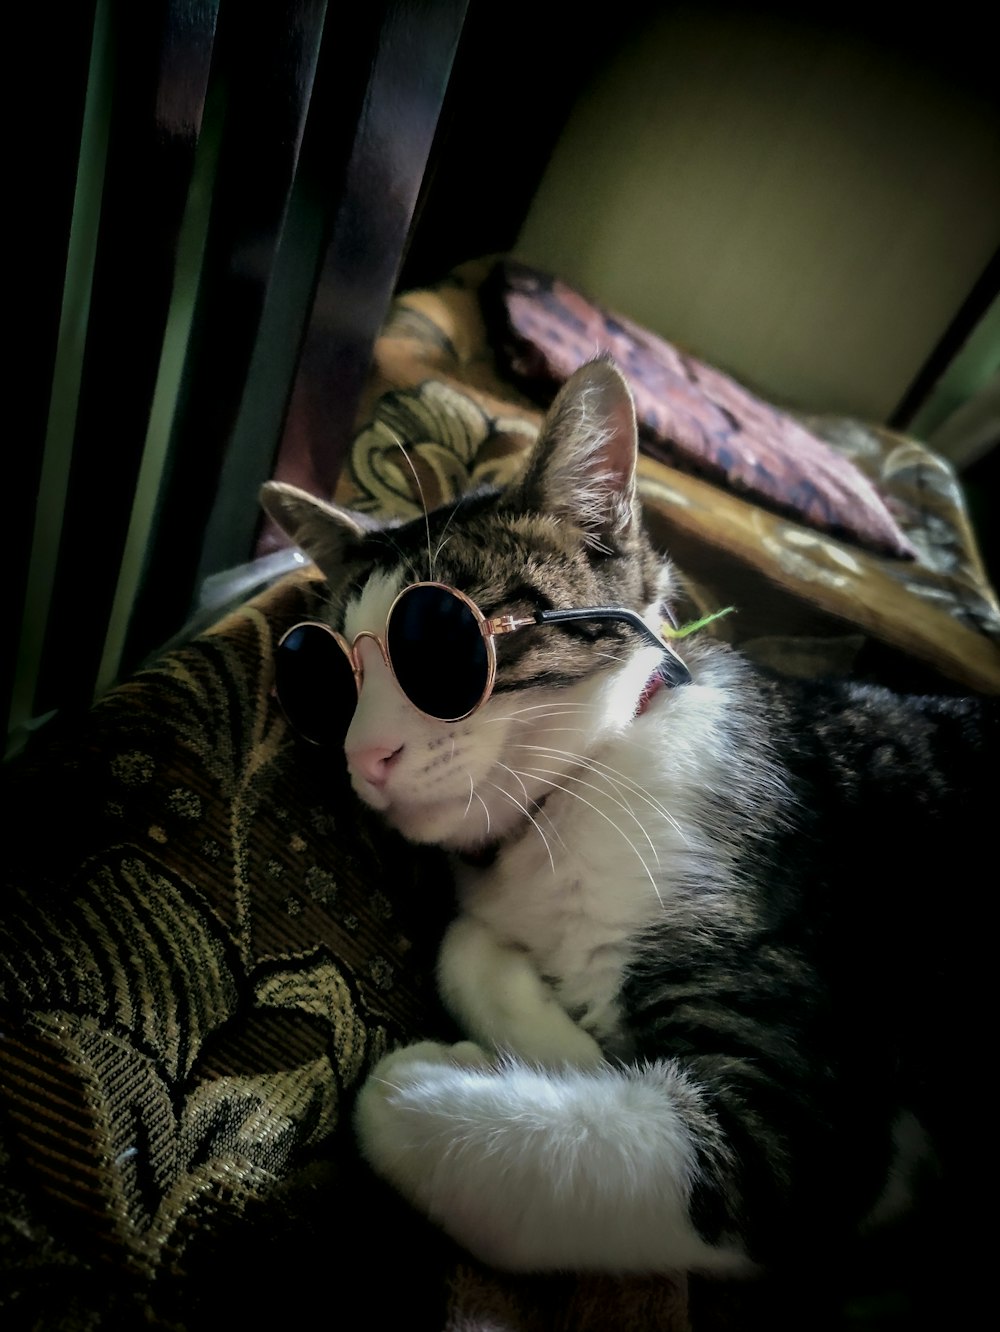 Imágenes de Gato Con Gafas | Descarga imágenes gratuitas en Unsplash